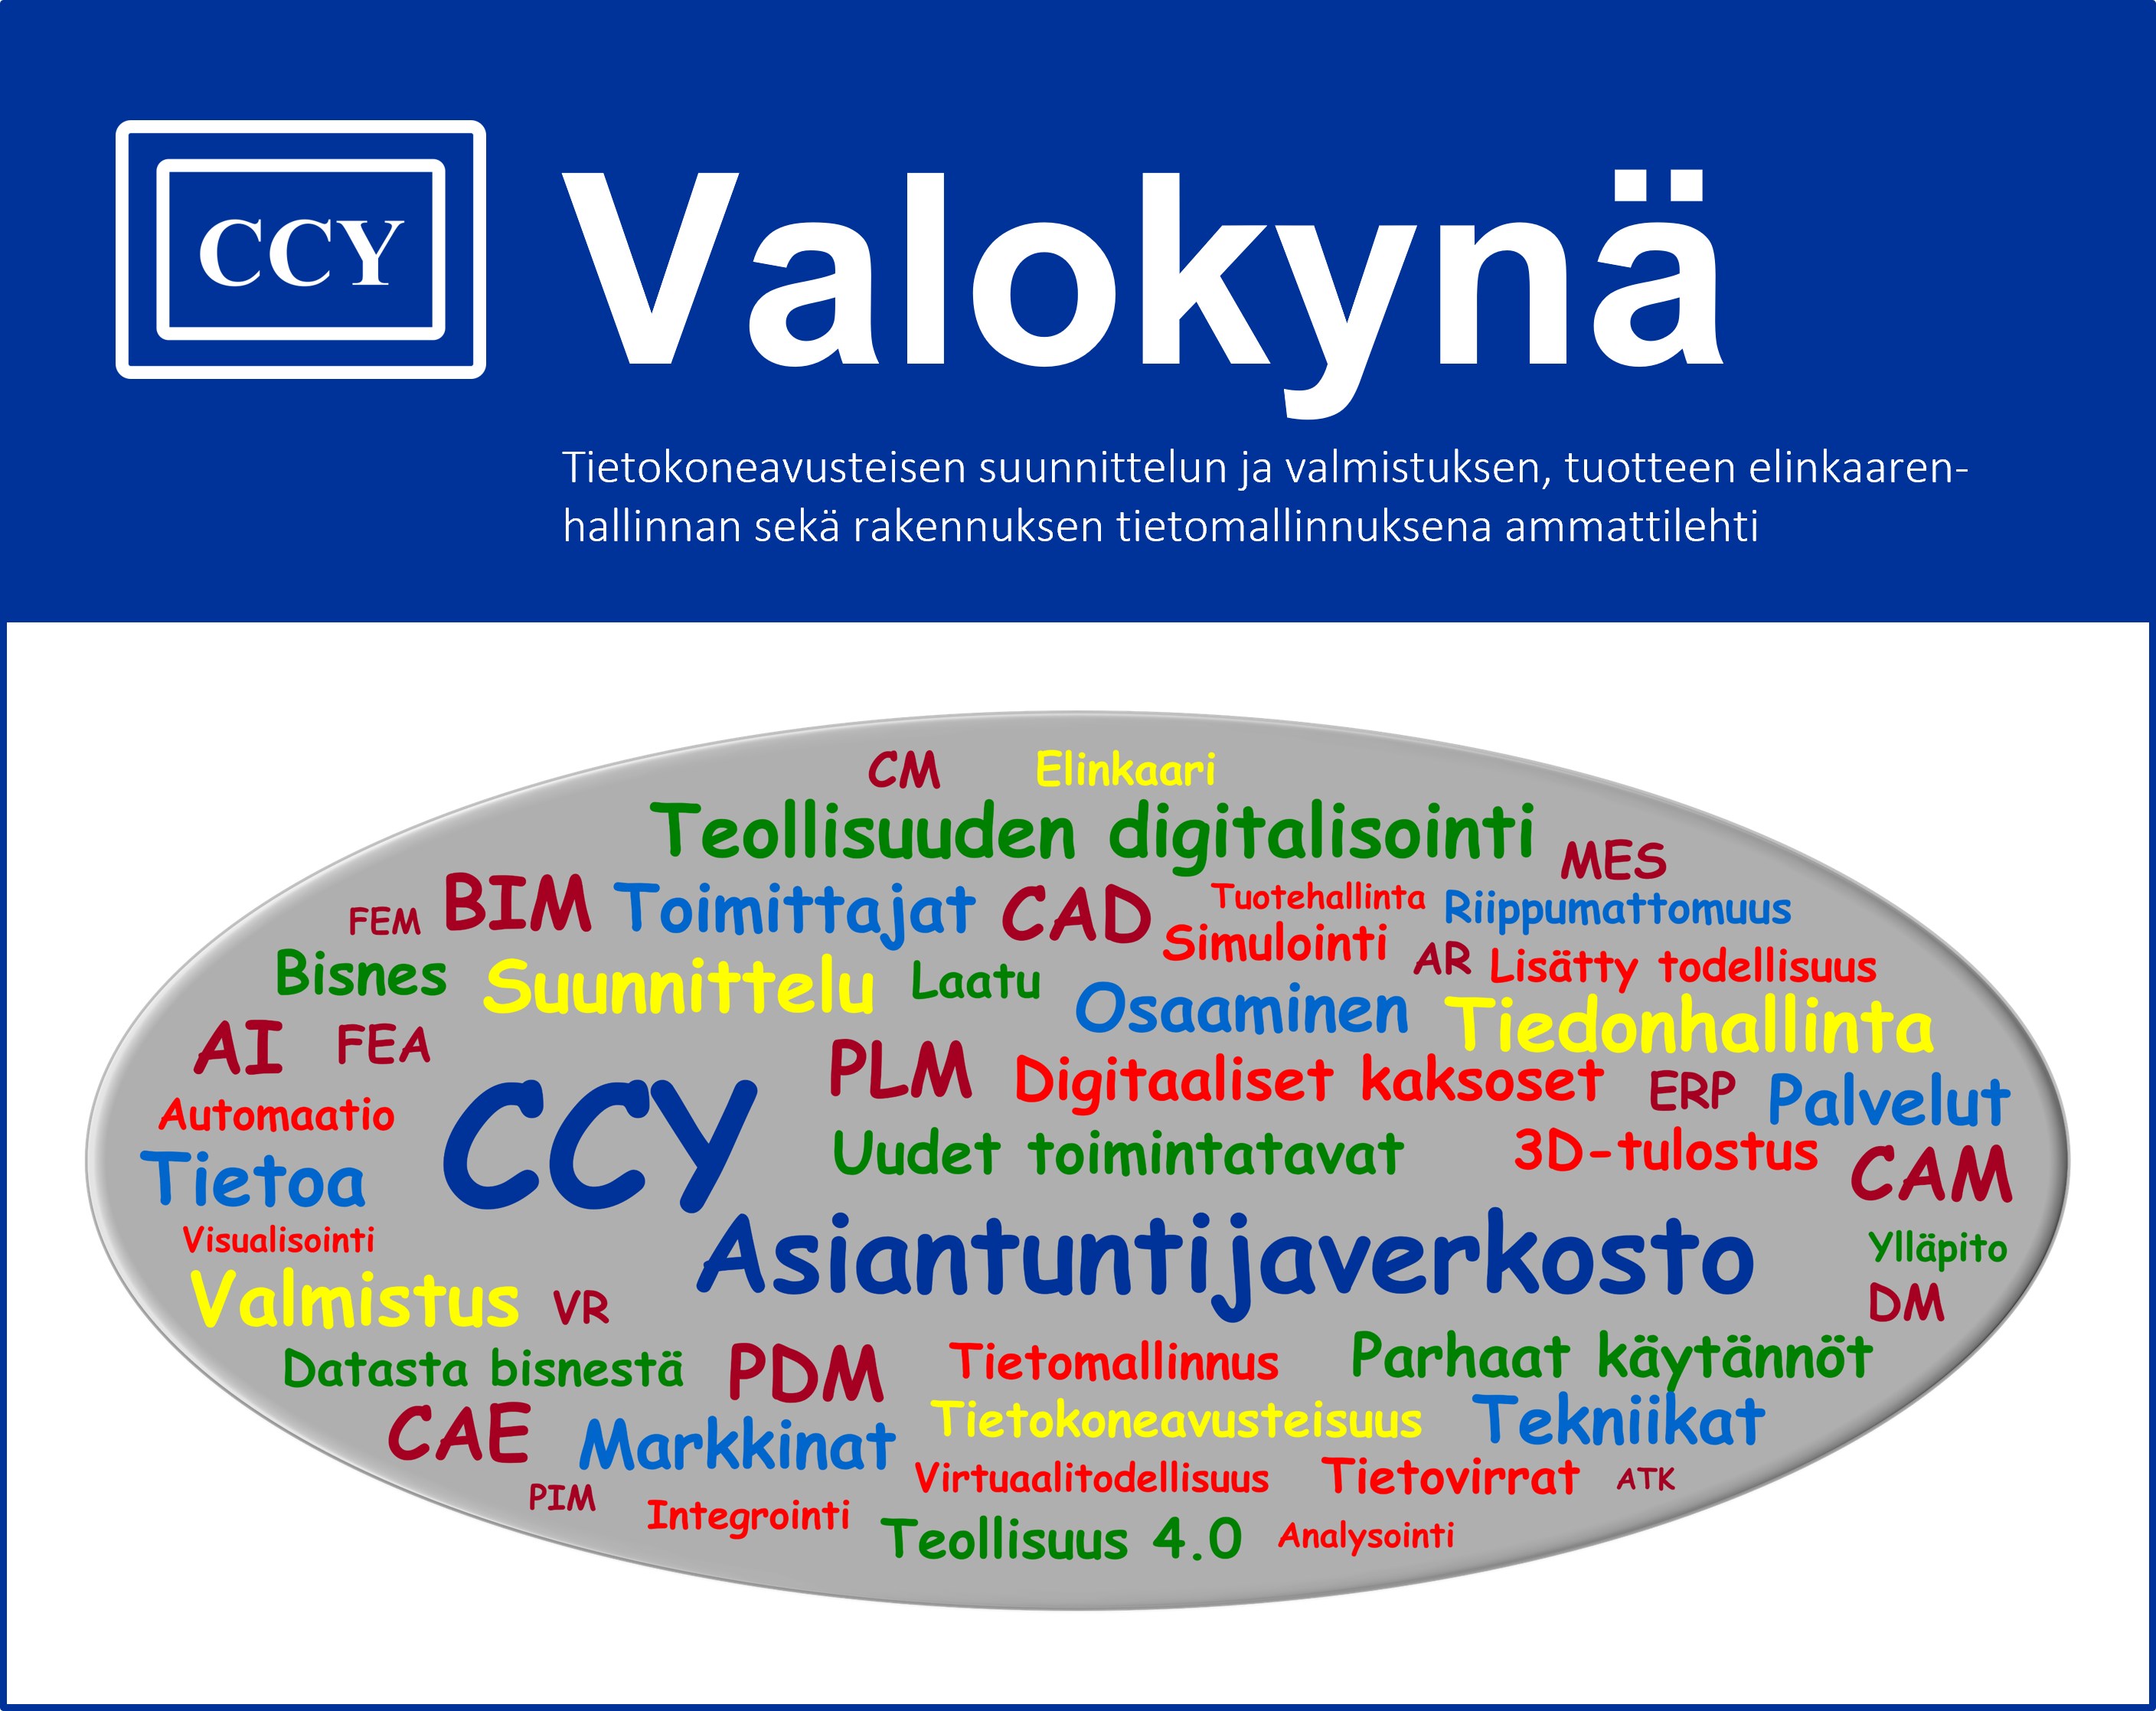 CCY-Valokyna-sanapilvi-20220805.png